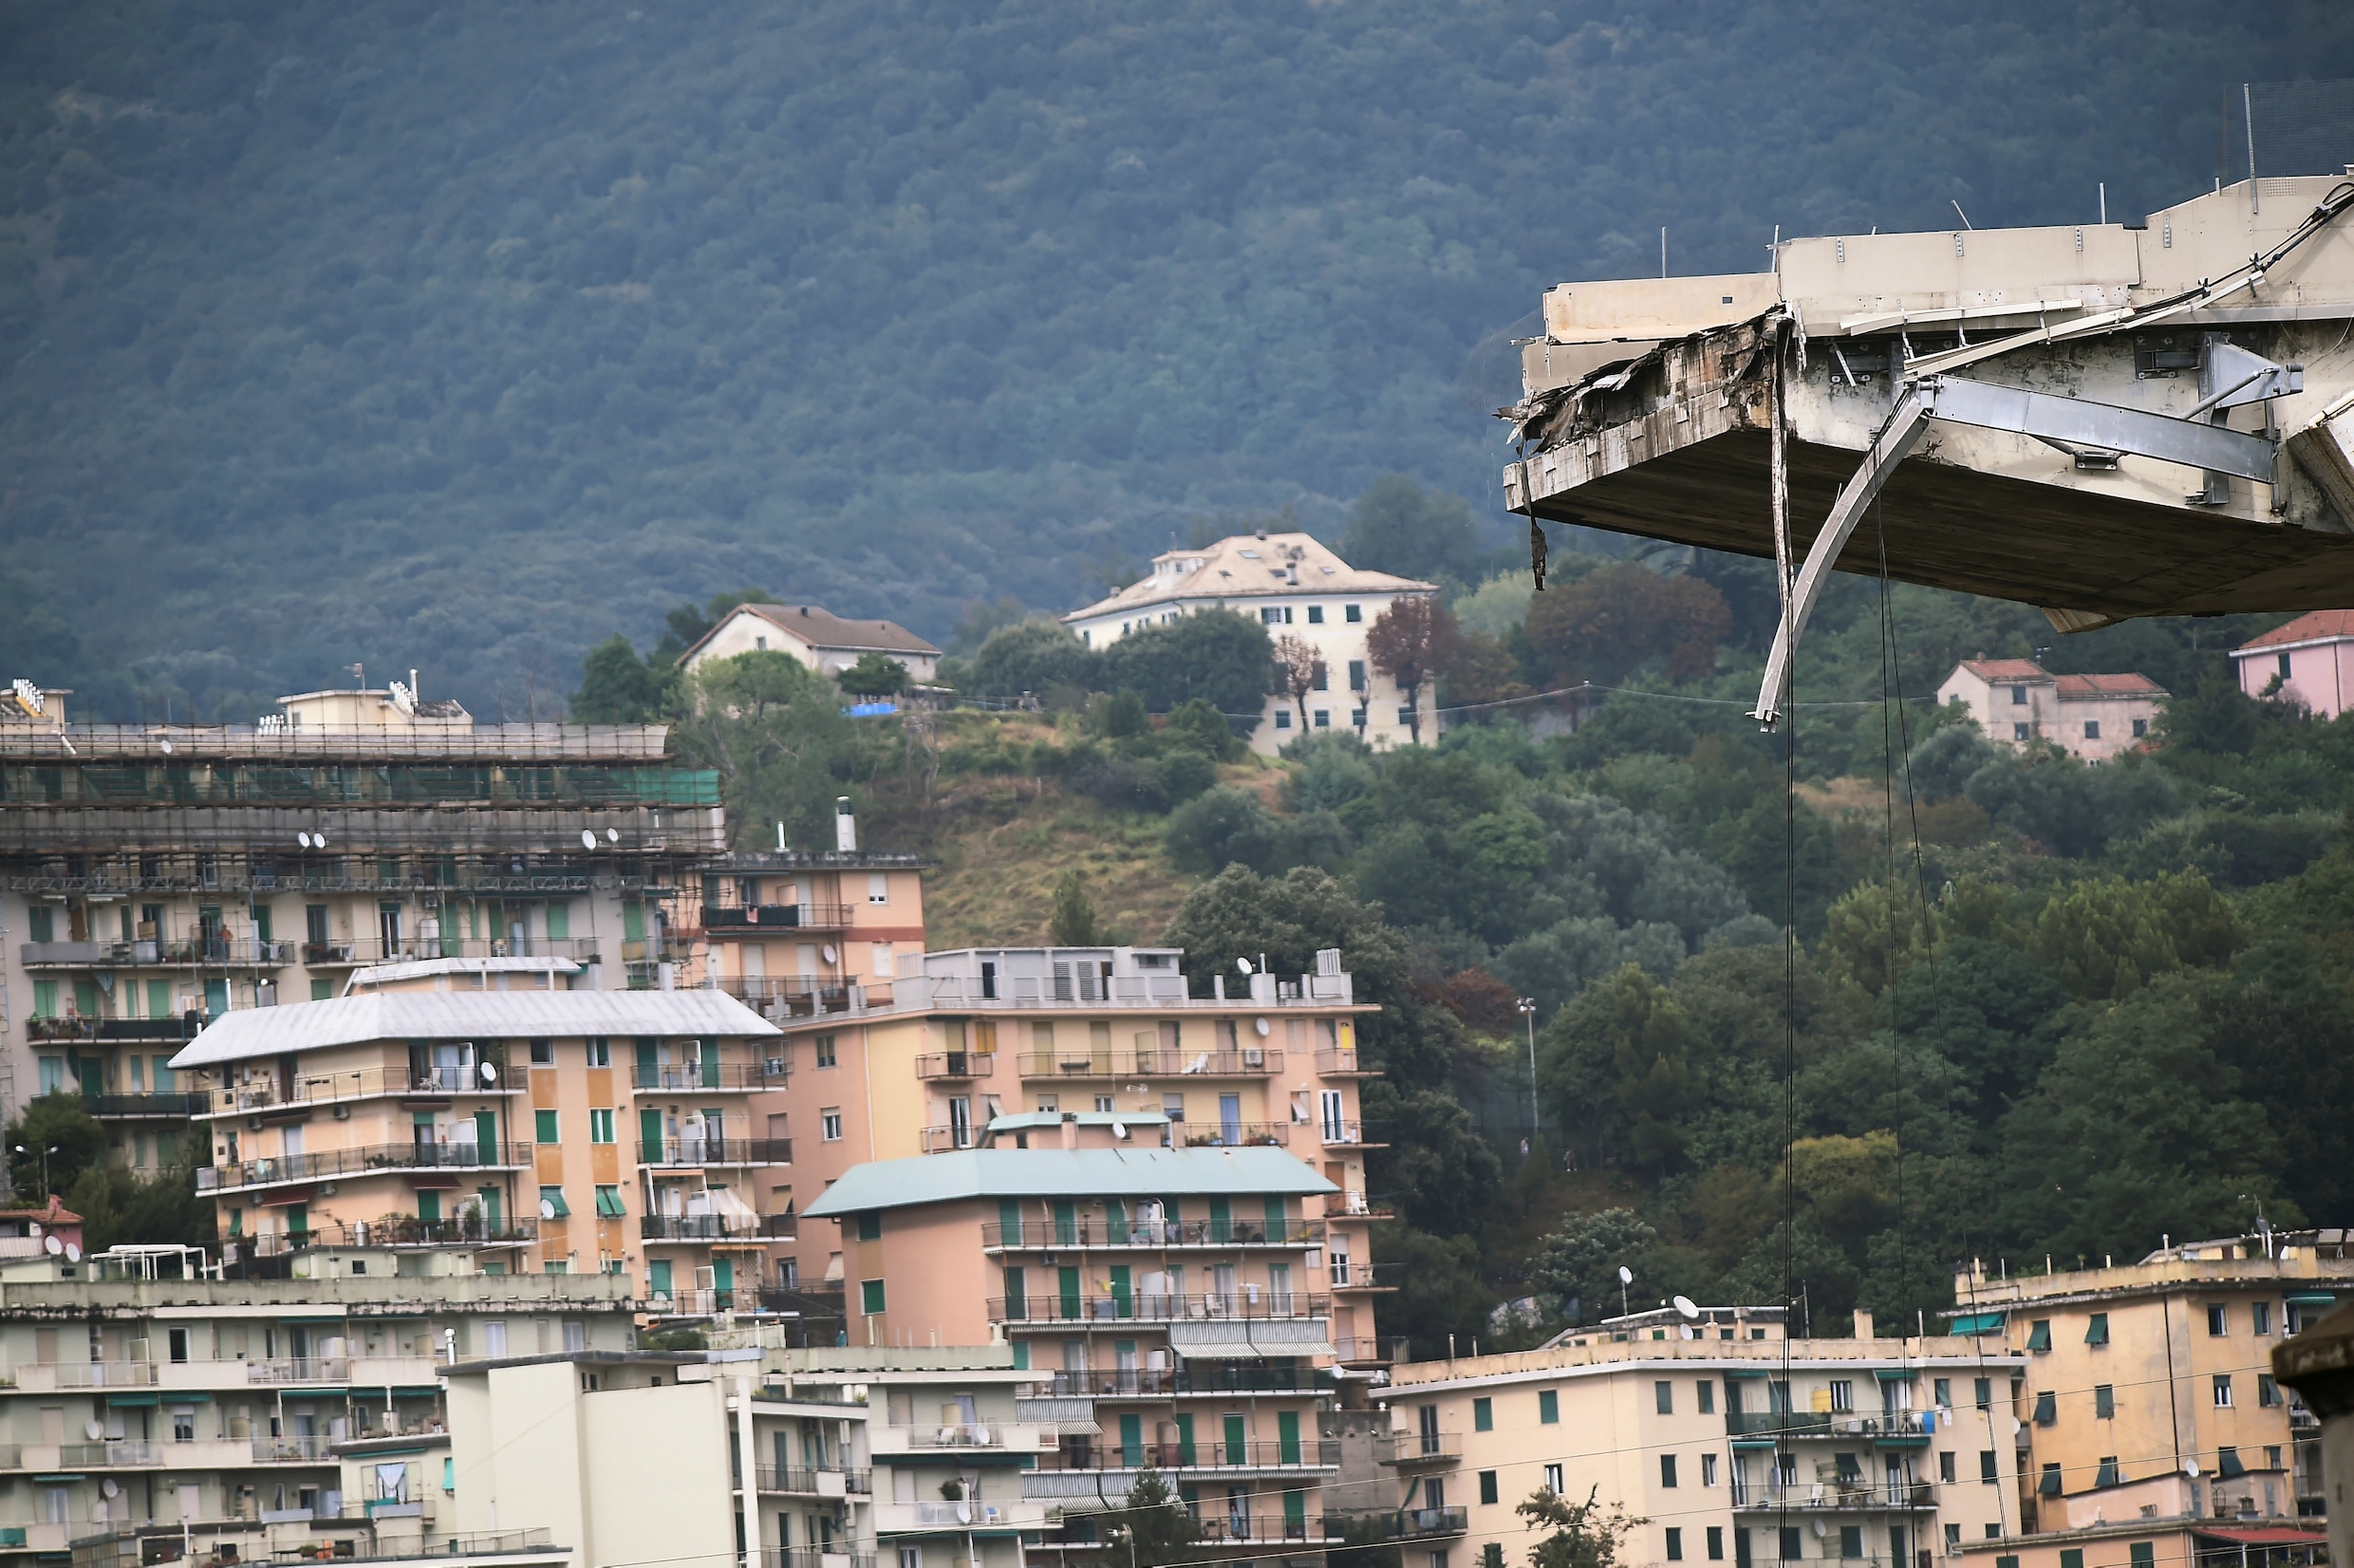 In beeld: De ravage na het instorten van de brug in Genua